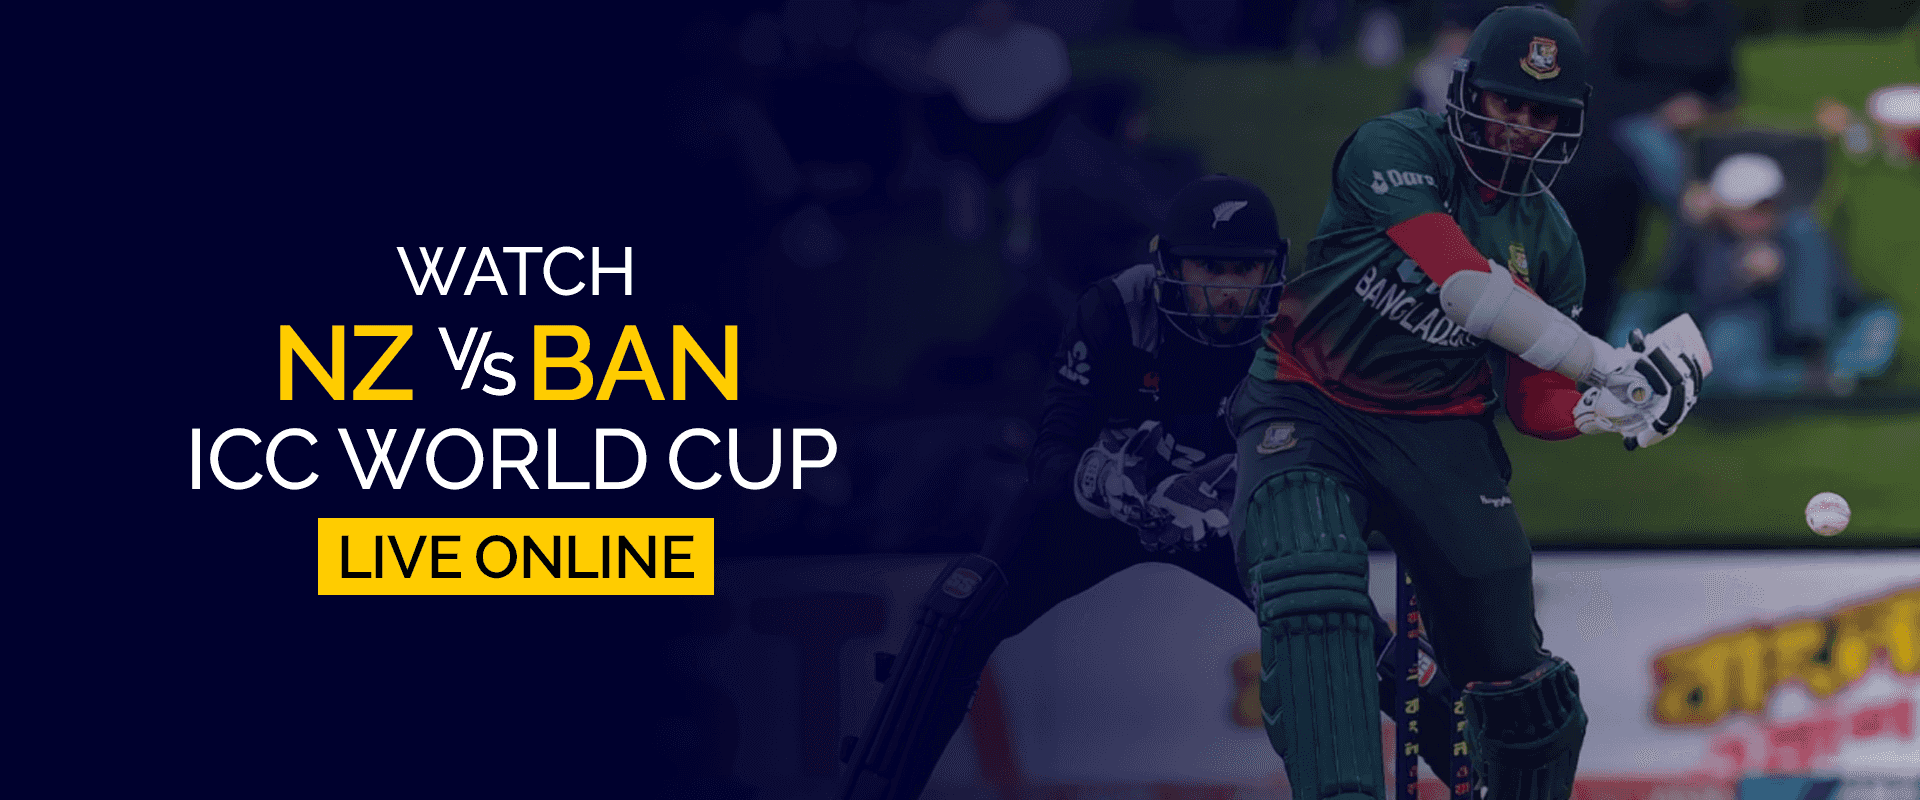 Смотрите игру NZ vs BAN ICC World Cup в прямом эфире онлайн